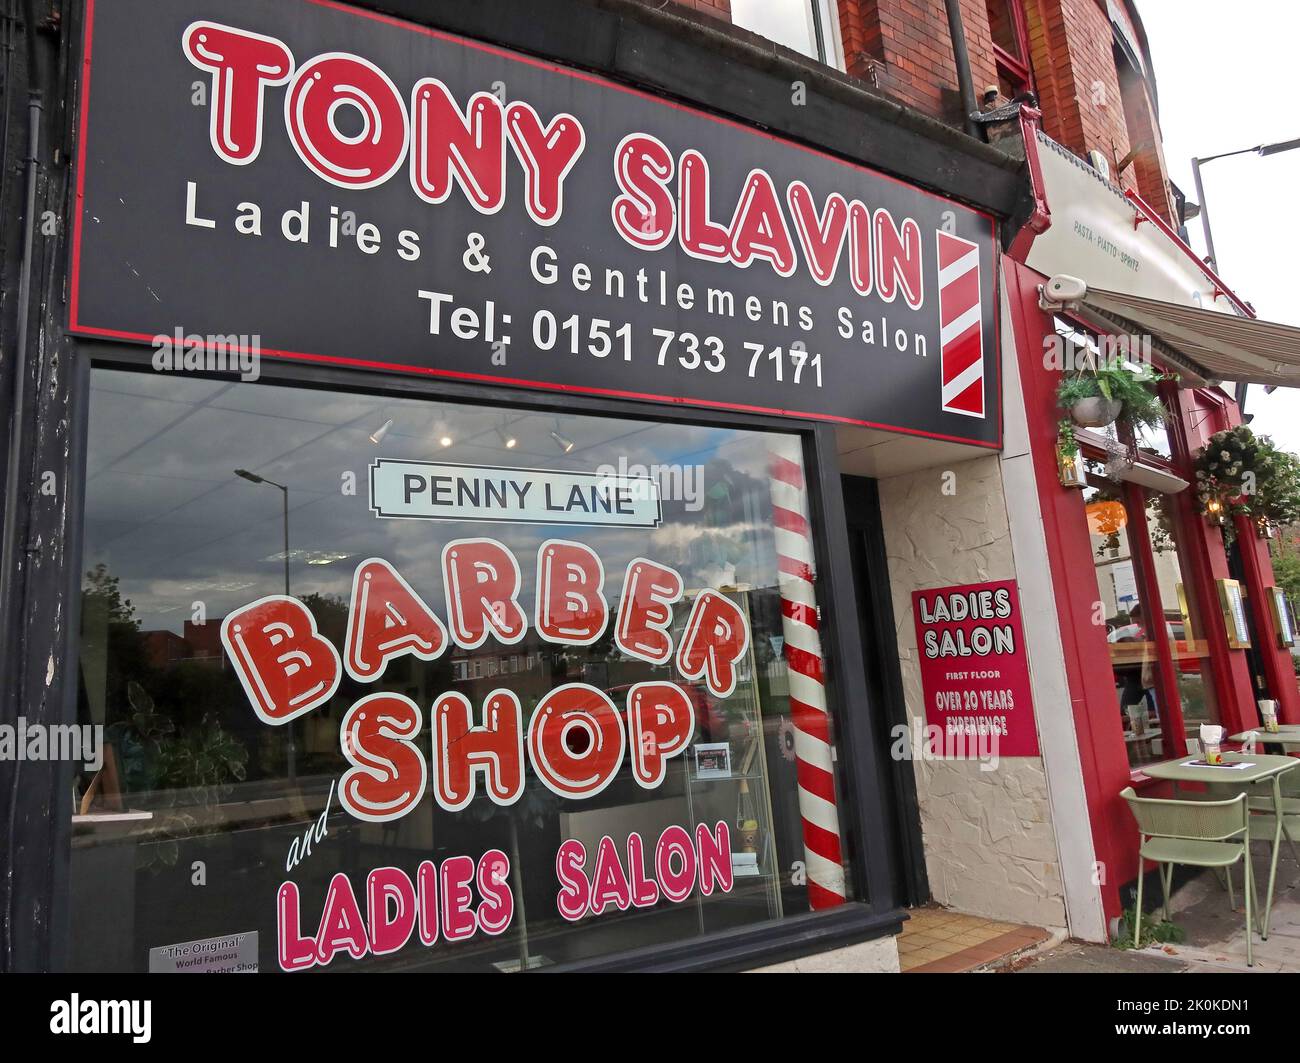 The Barber Shop, au pied de Penny Lane, Tony Slavins, 11 Smithdown PL, Liverpool, Merseyside, ANGLETERRE, ROYAUME-UNI, L15 9EH Banque D'Images